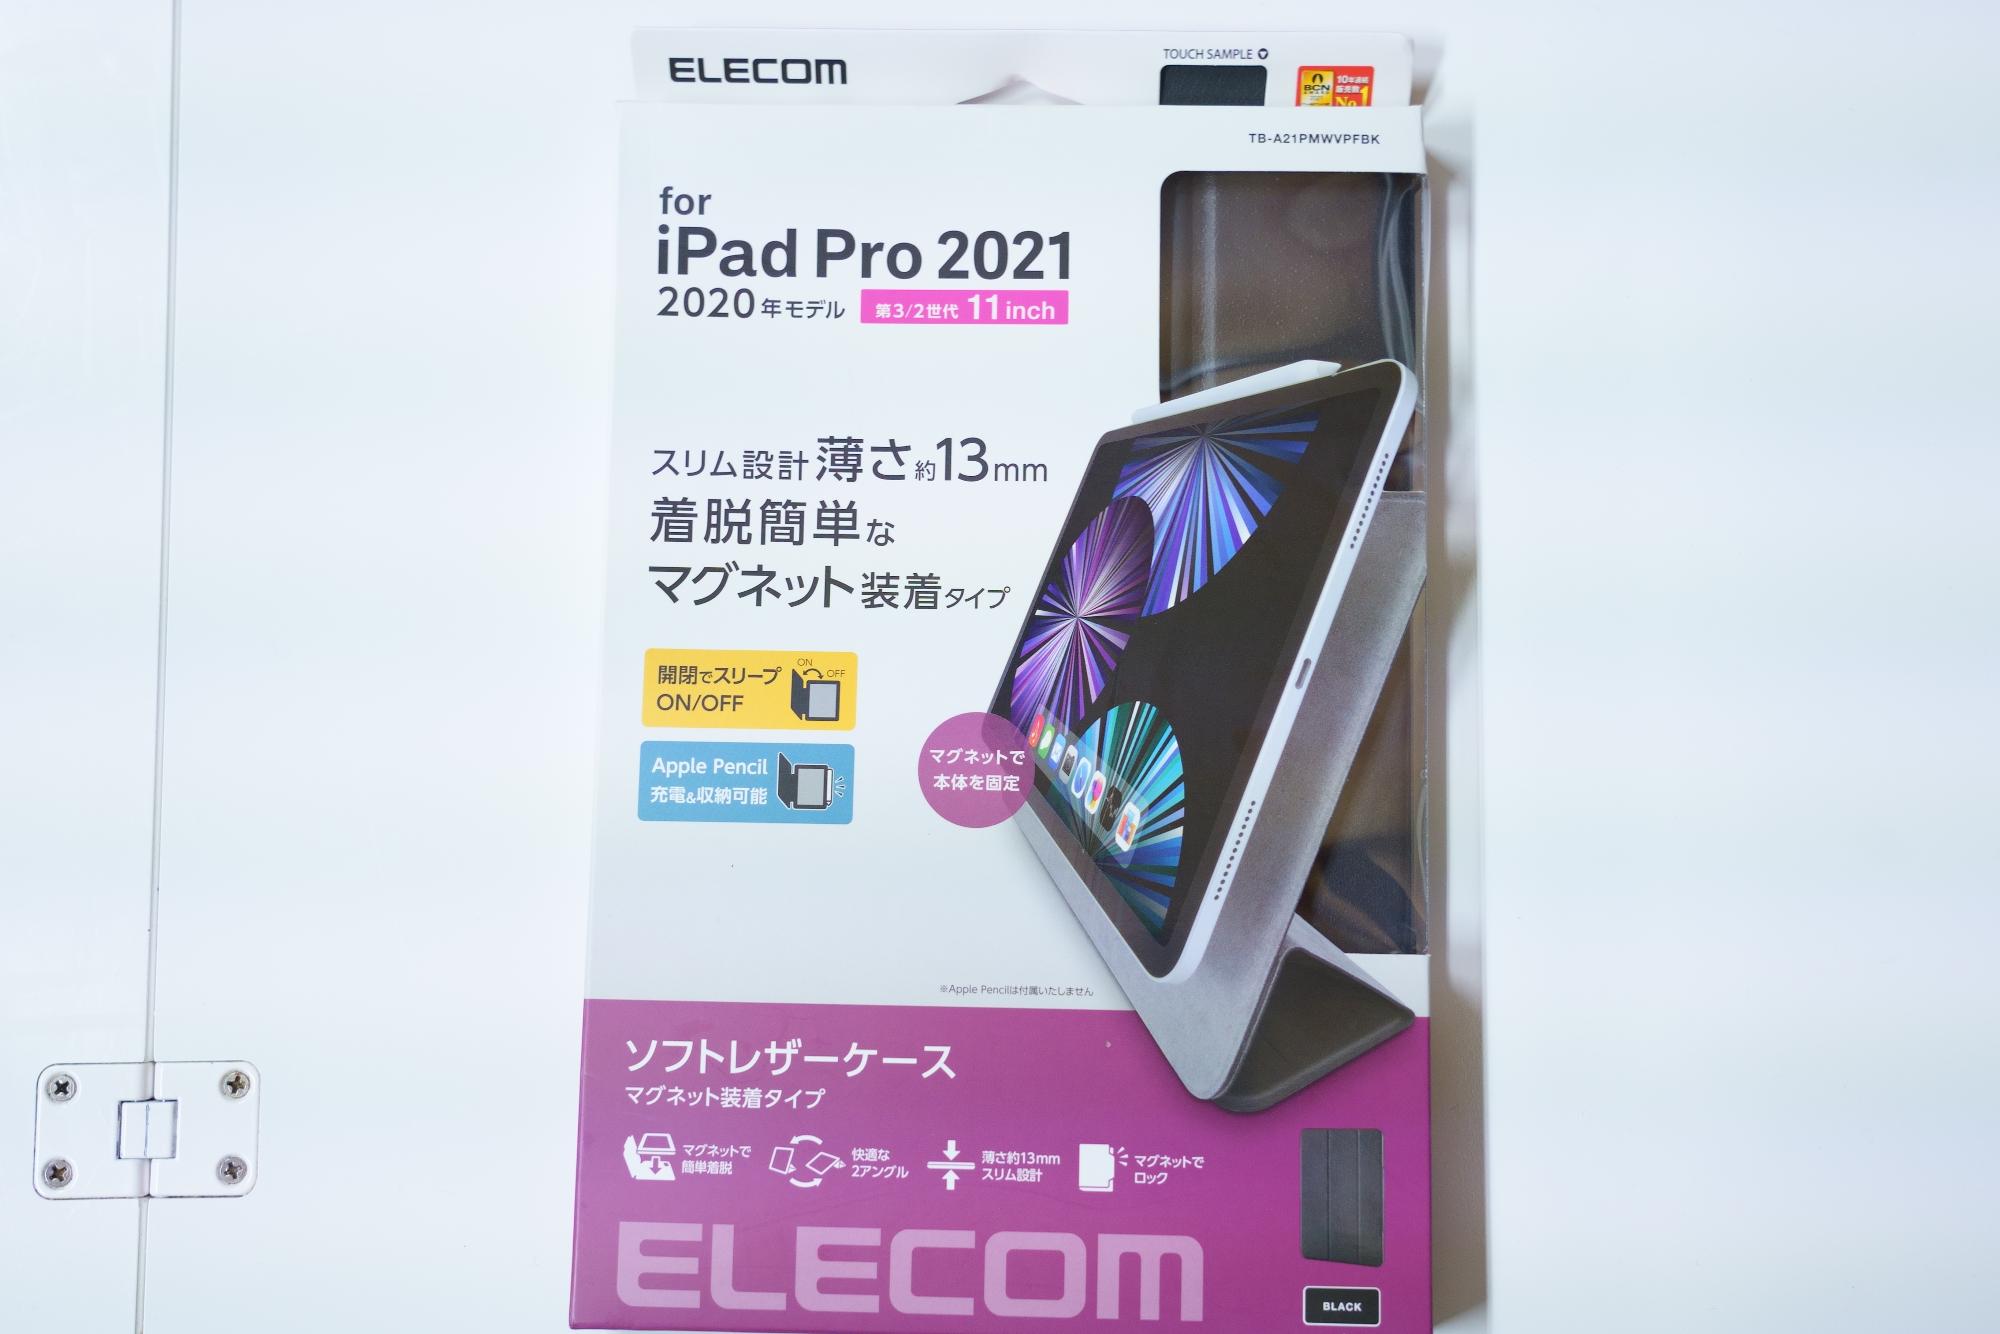 iPad Pro11インチにマグネットケースがおすすめな理由 - ダイスチャンネル  Yahoo! JAPAN クリエイターズプログラム